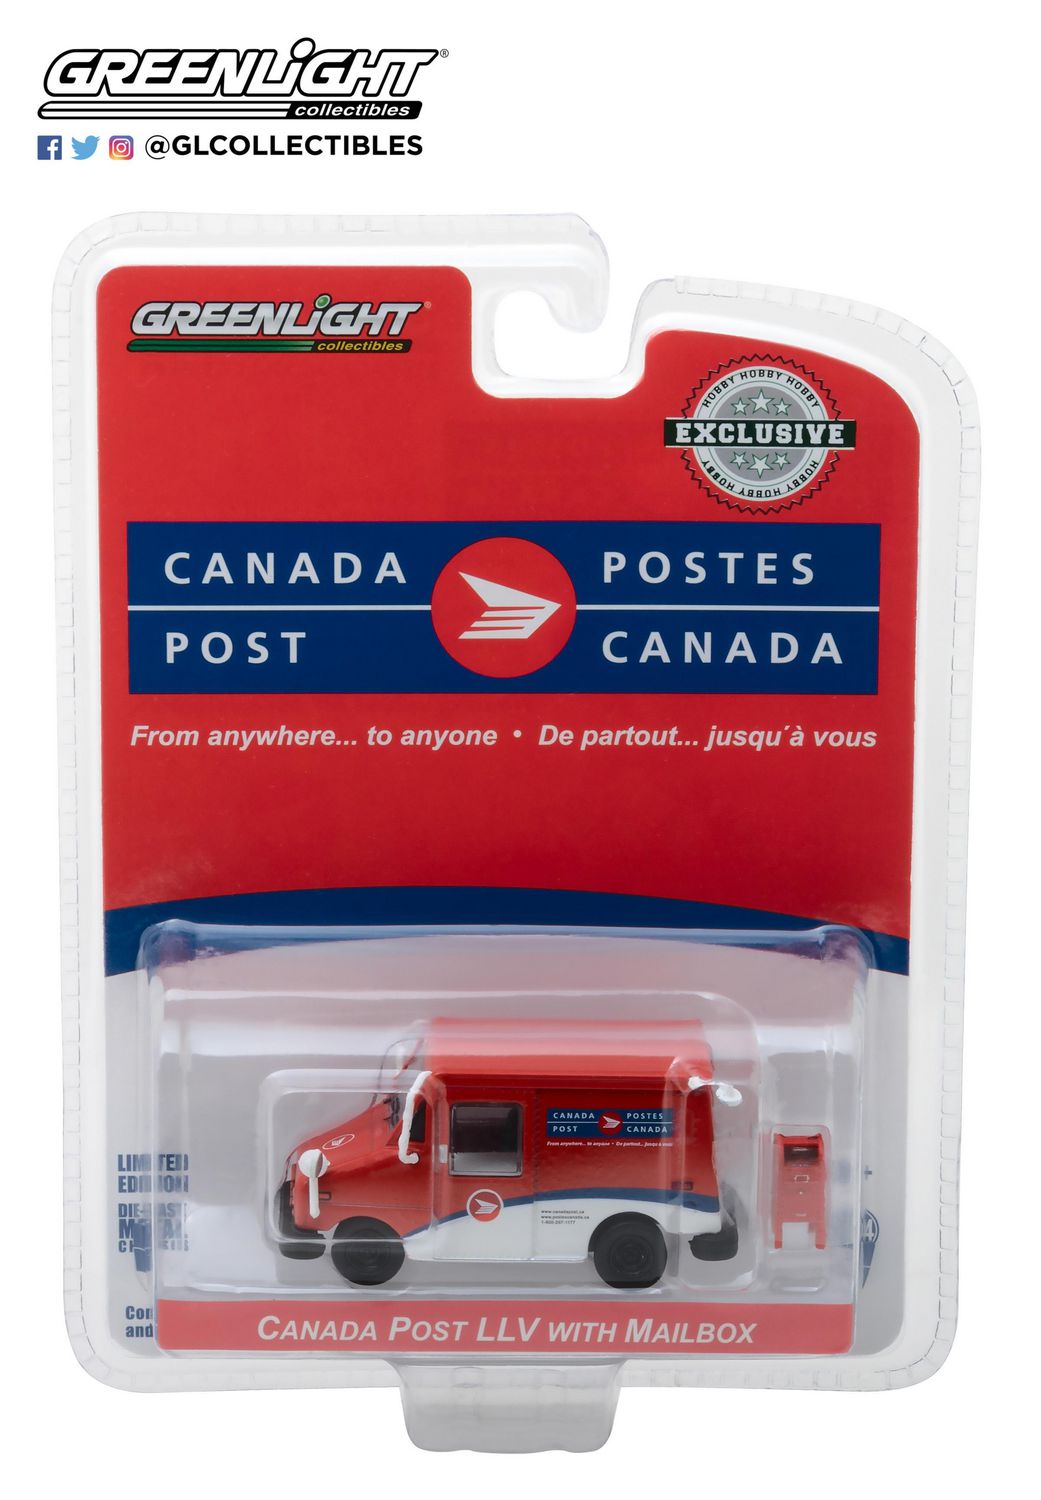 Véhicule de livraison postale la Poste du Canada